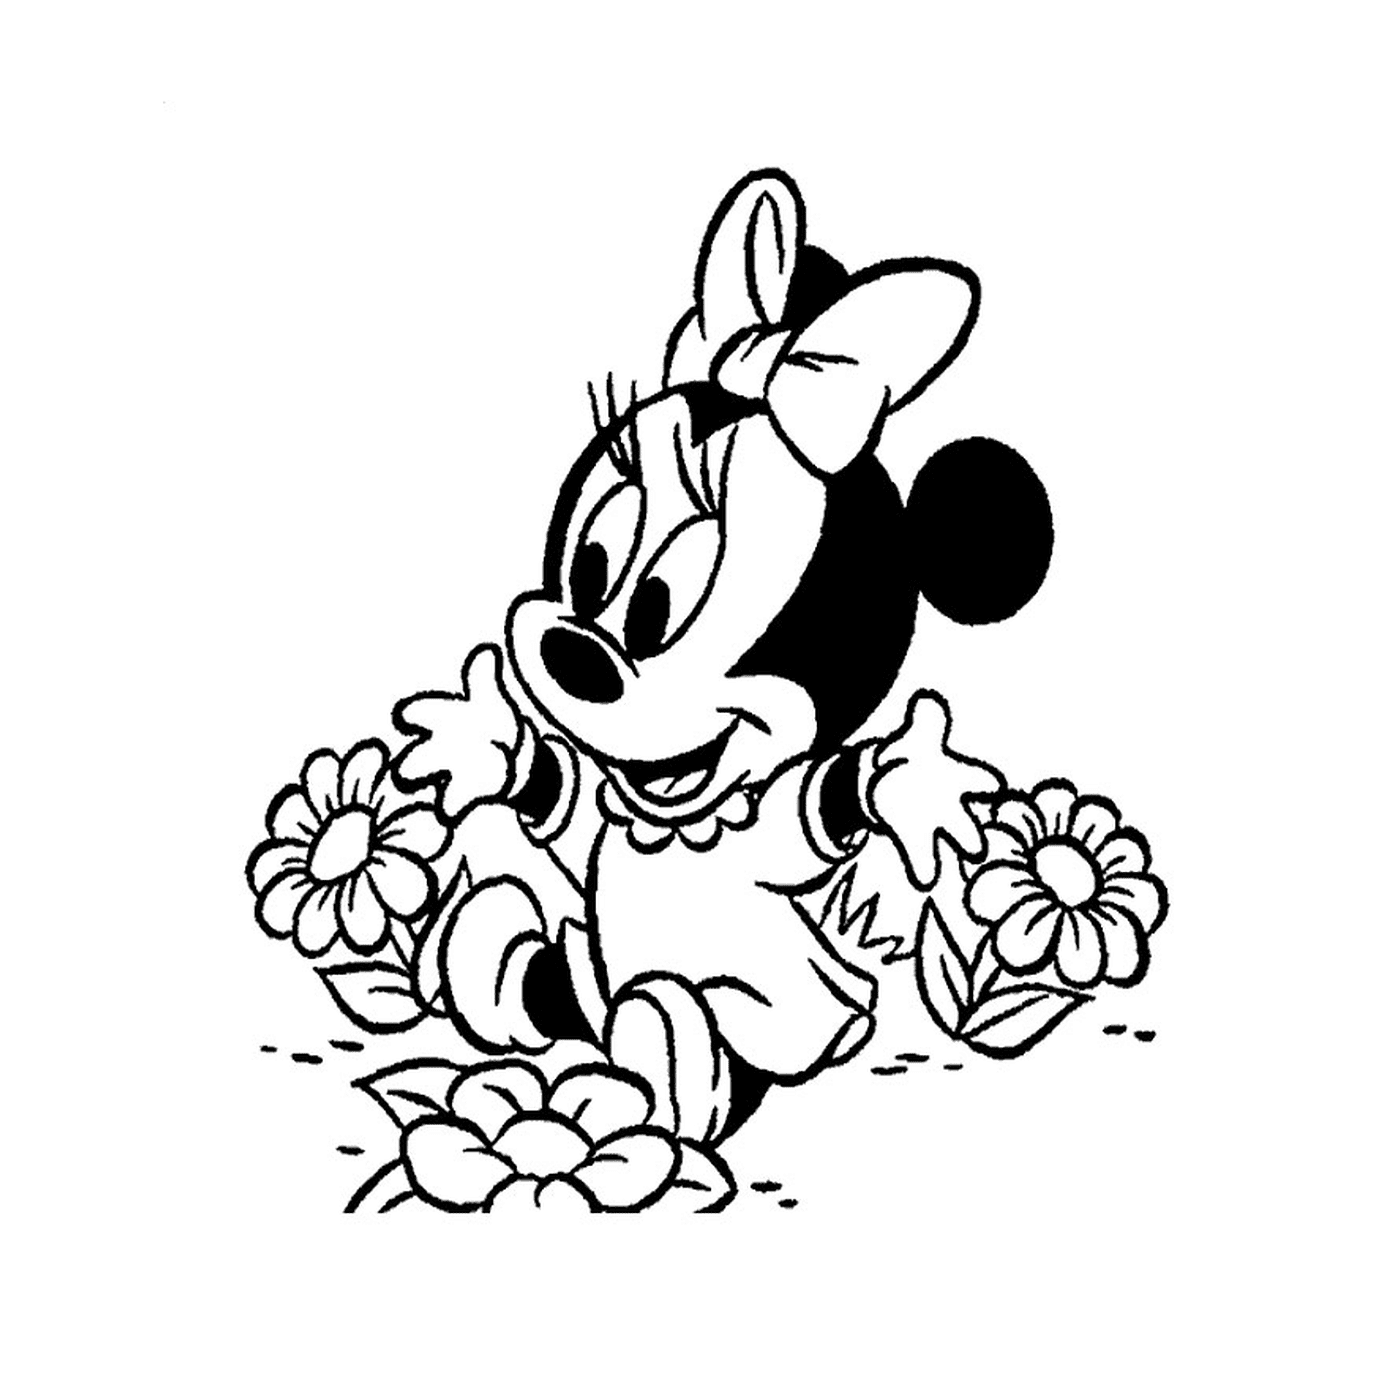  Minnie Mouse bebê sentado em flores 